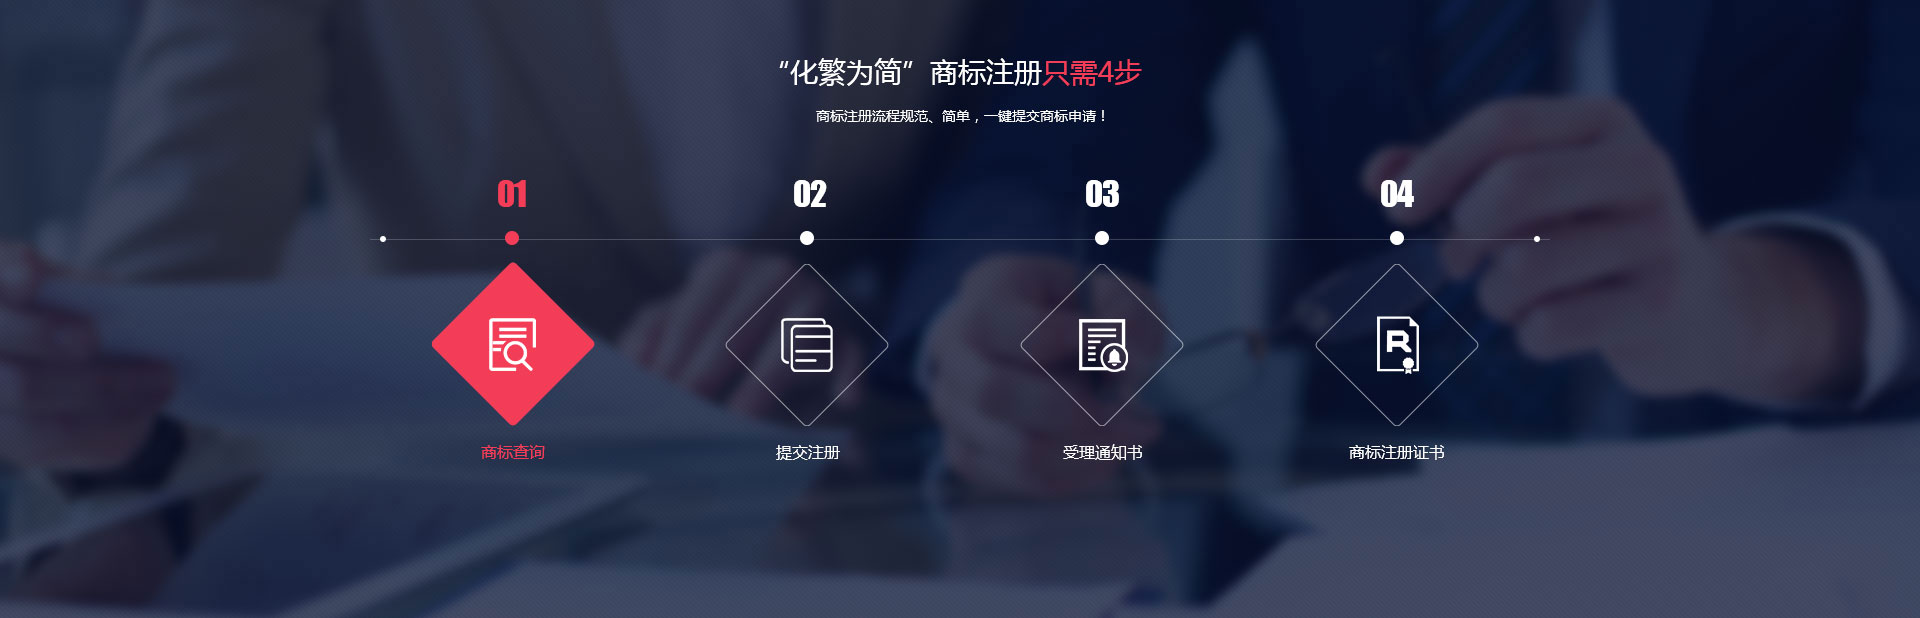 k8凯发官方网站官方网站 - 登录入口_产品7296